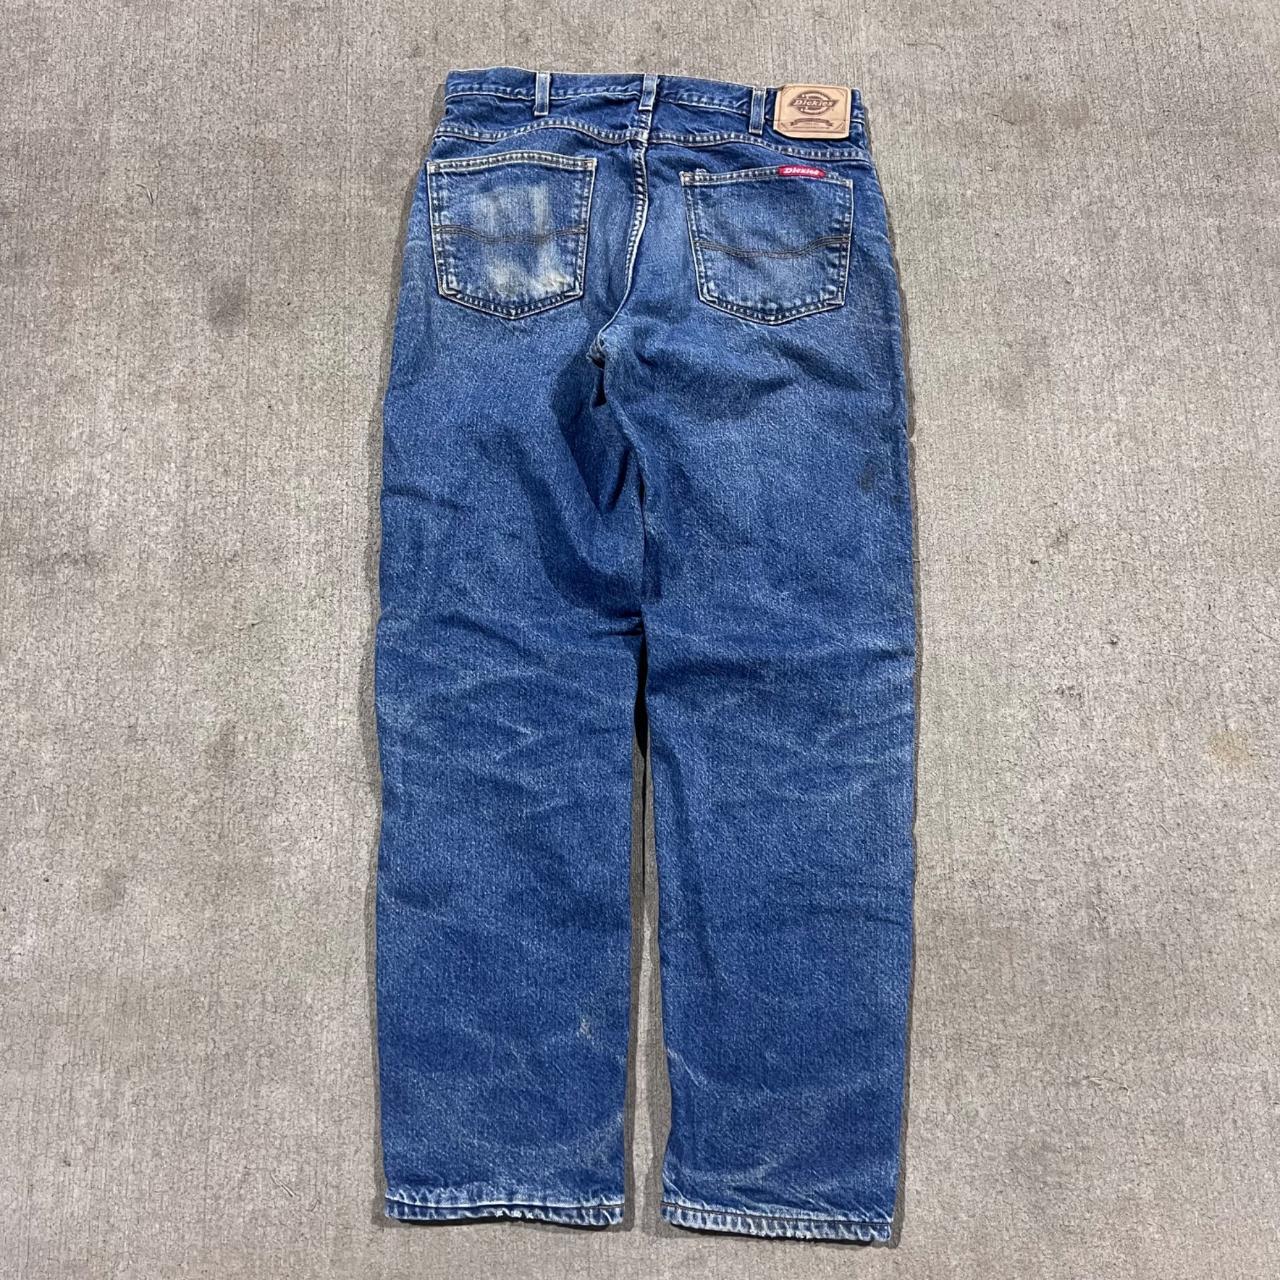 Vintage Dickies Flannel Lined Jeans Blue Y2K 2000s... - Depop